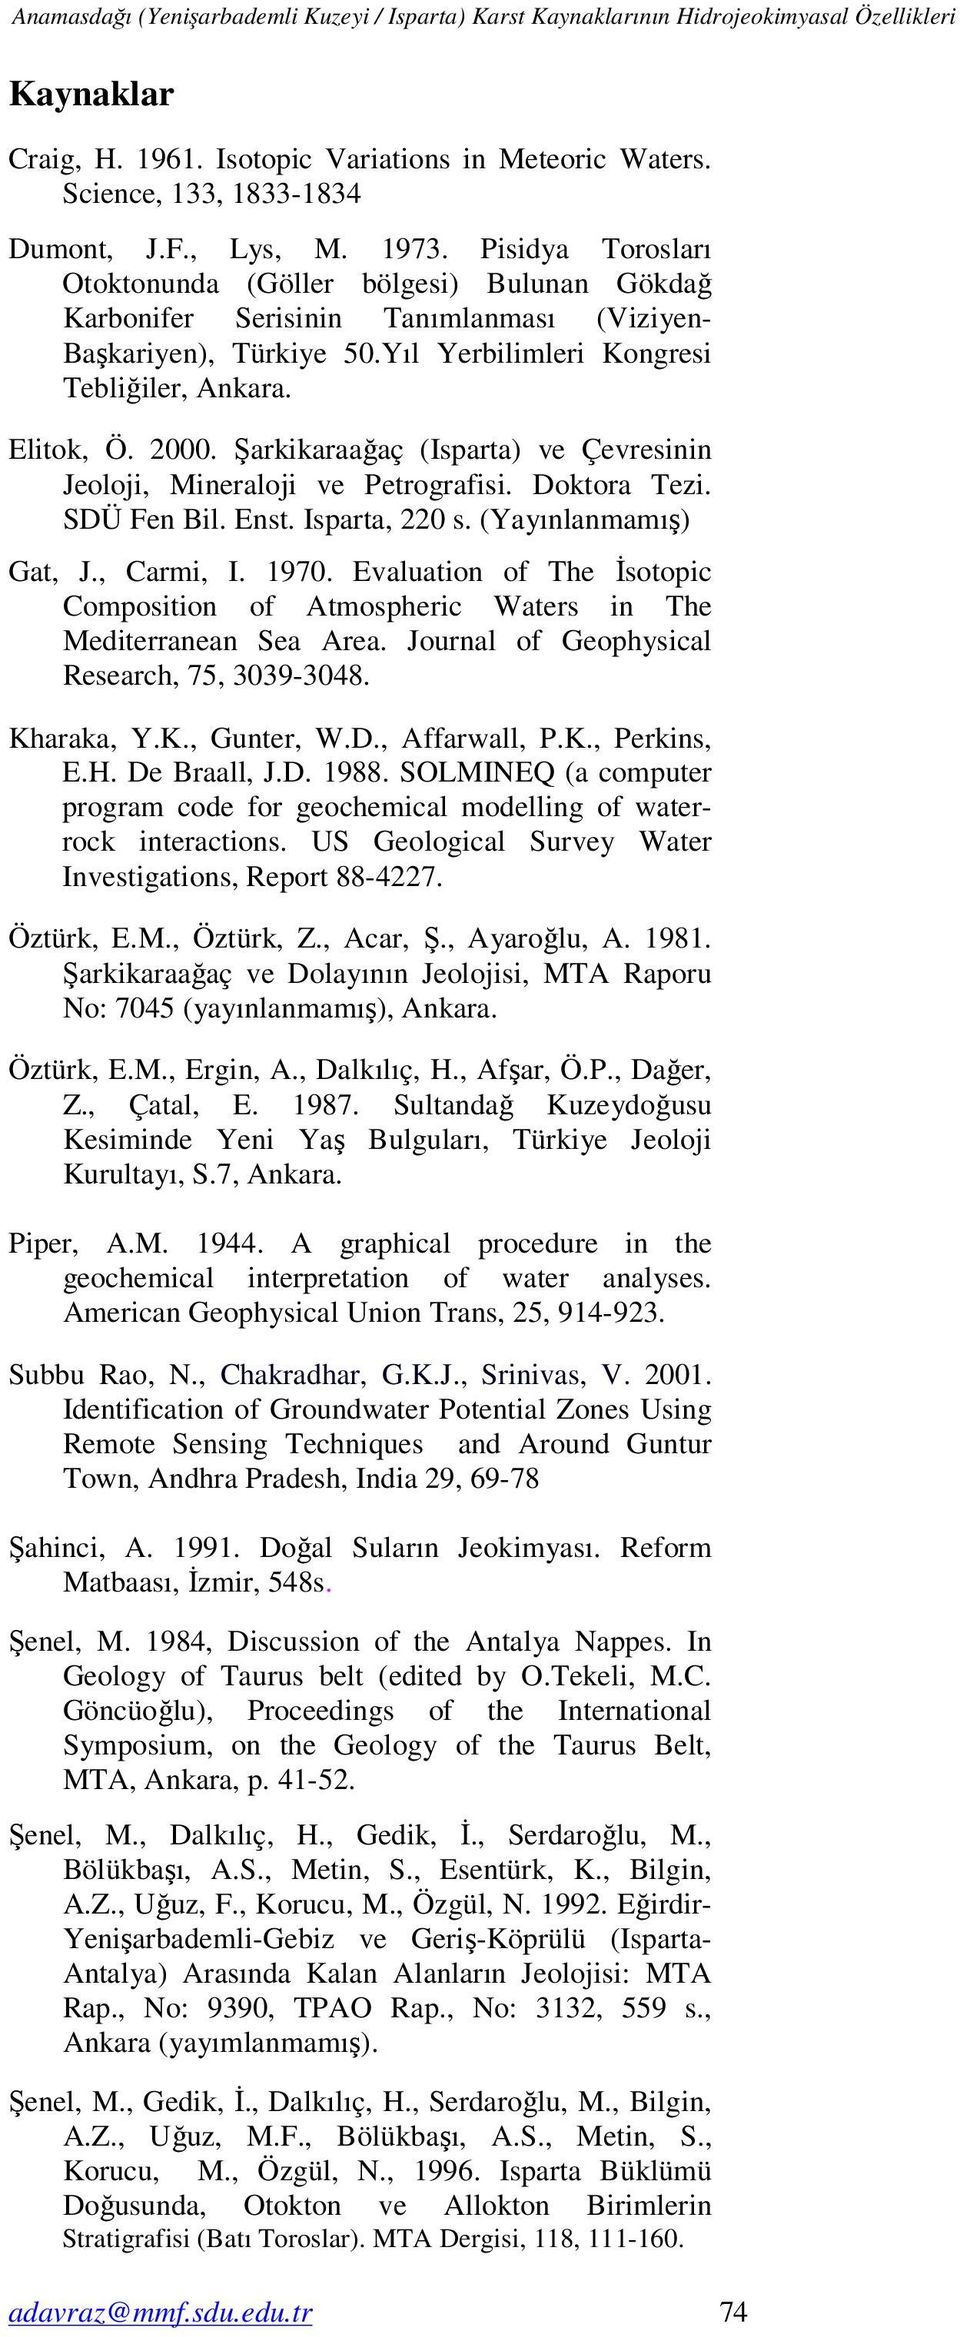 Elitok, Ö. 00. Şarkikaraağaç (Isparta) ve Çevresinin Jeoloji, Mineraloji ve Petrografisi. Doktora Tezi. SDÜ Fen Bil. Enst. Isparta, 2 s. (Yayınlanmamış) Gat, J., Carmi, I. 1970.